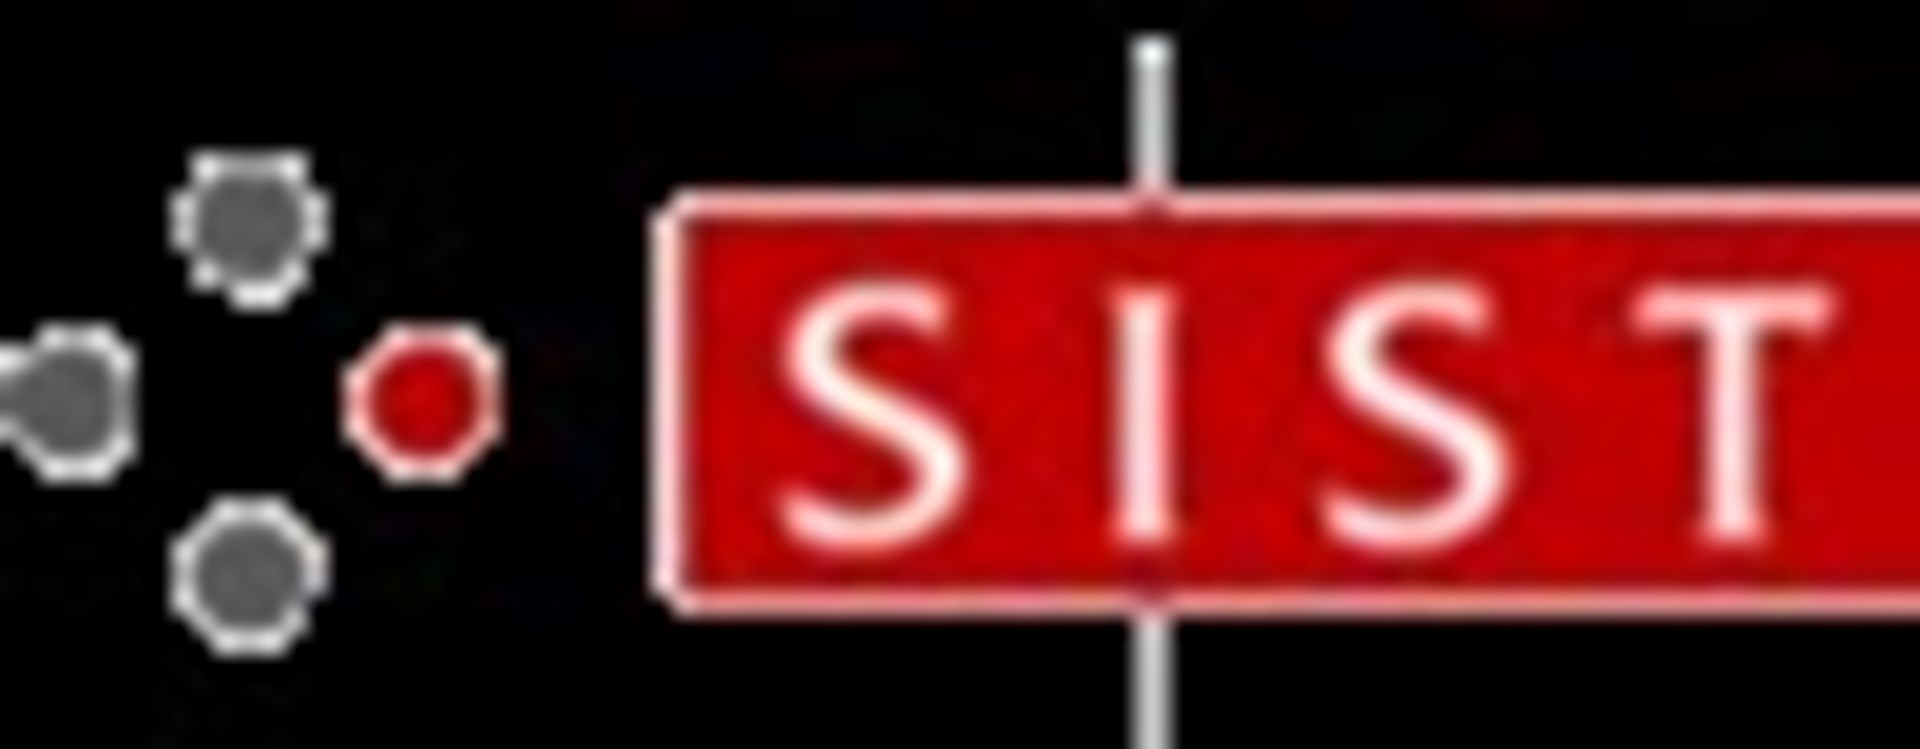 Slovenski institut za standardizacijo SIST